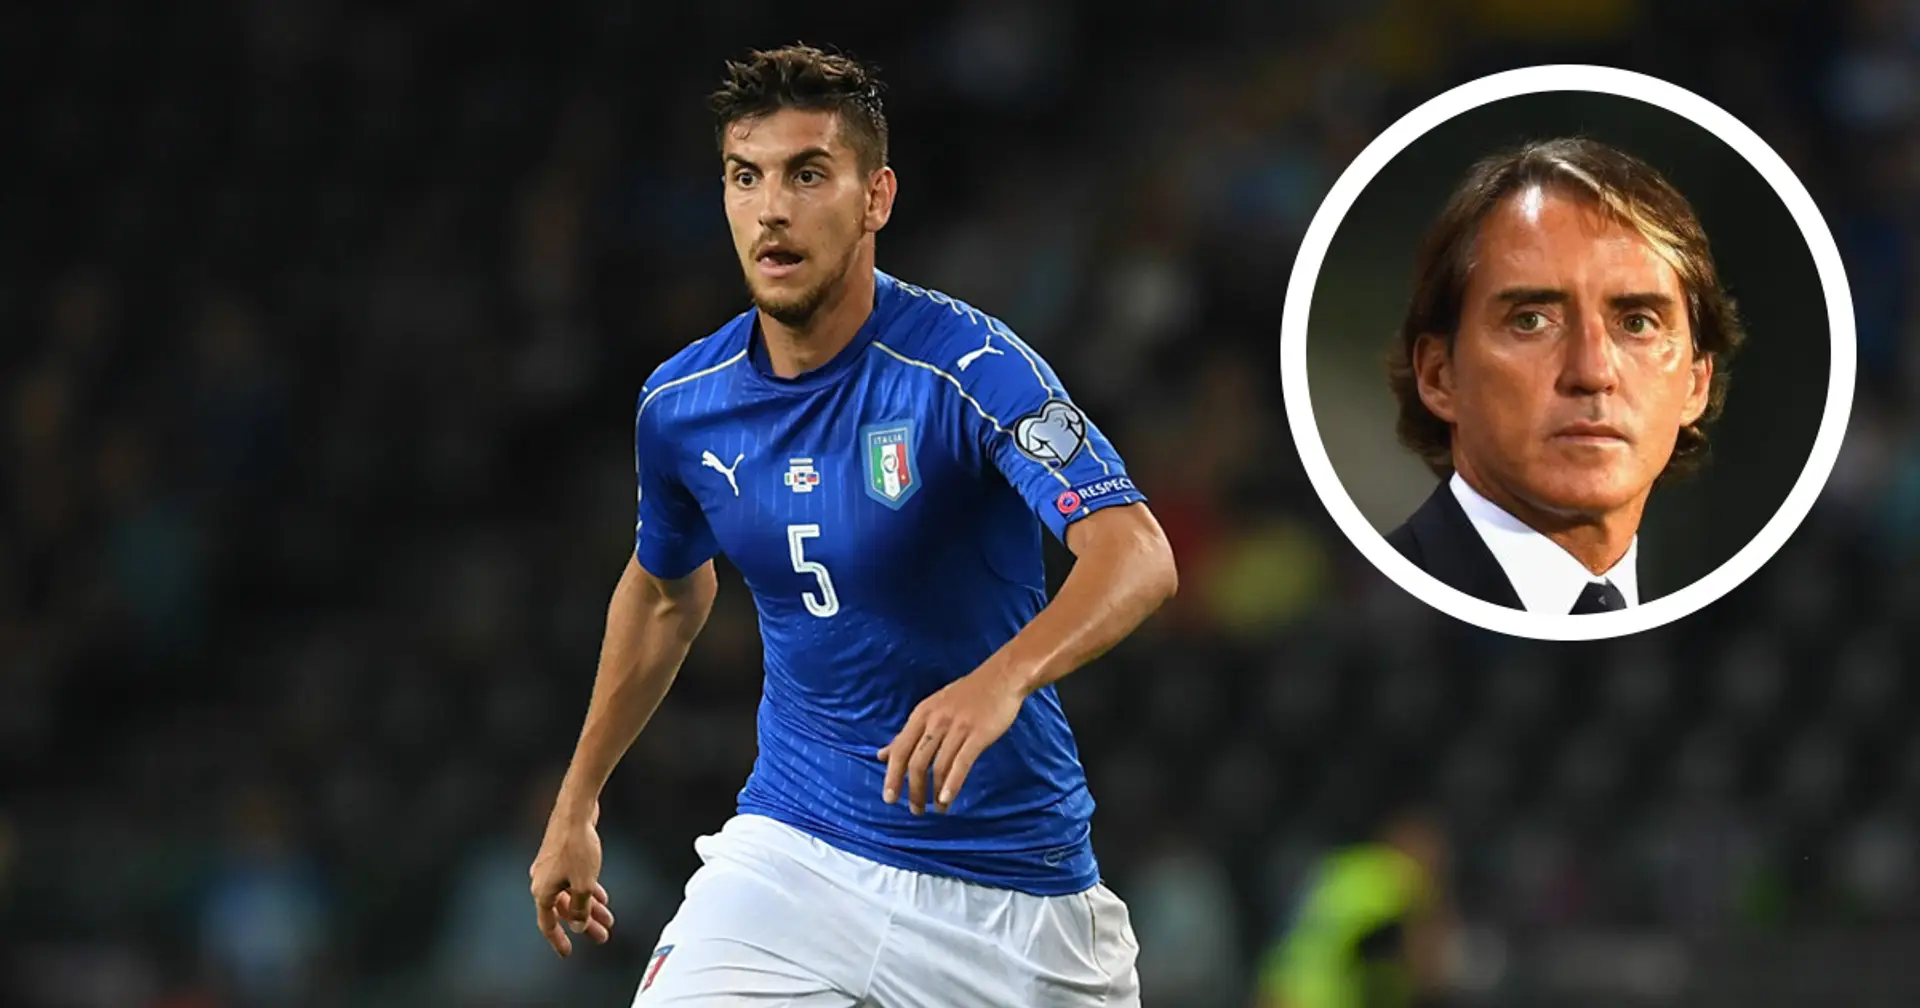 "Ha giocato bene nonostante venisse da un infortunio": Mancini applaude la prova di Pellegrini contro la Polonia